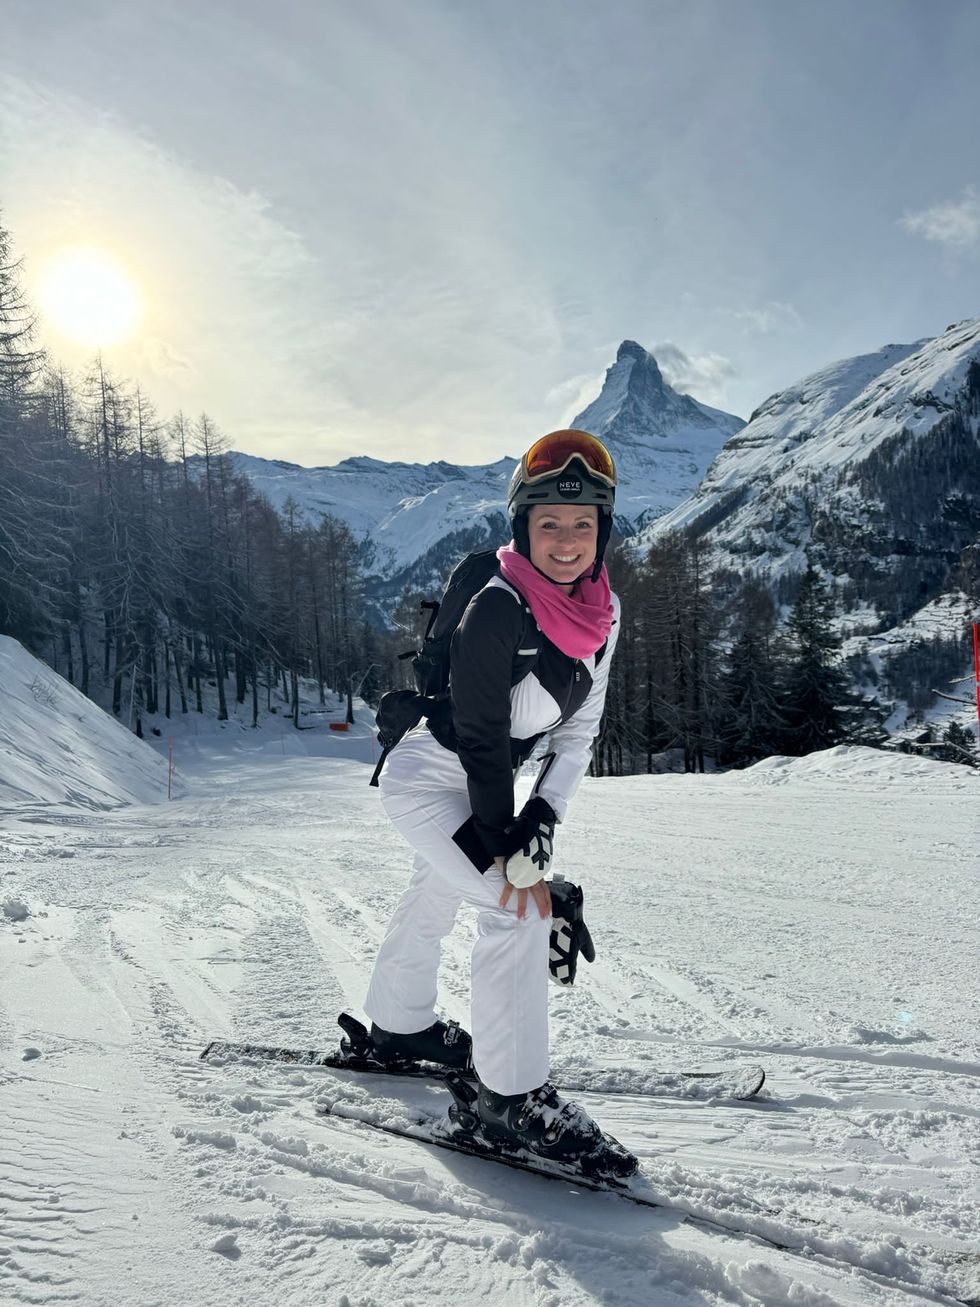 Giacca e pantaloni da sci, la tuta di Michelle Hunziker per l'inverno è chic